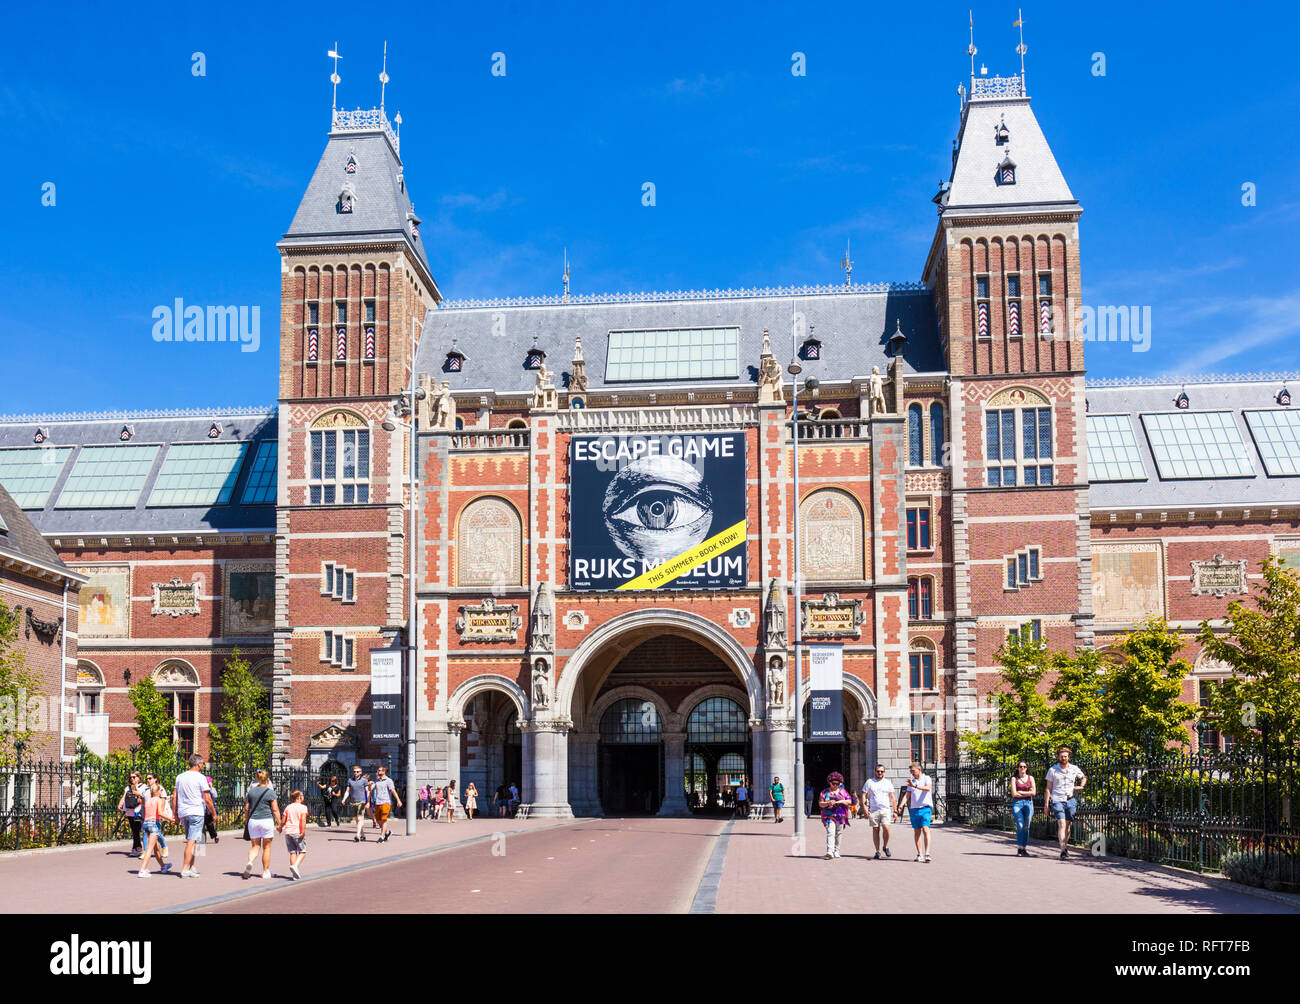 Arco de entrada al Rijksmuseum, museo y galería de arte holandés, Amsterdam, Holanda Septentrional, Holanda, Europa Foto de stock